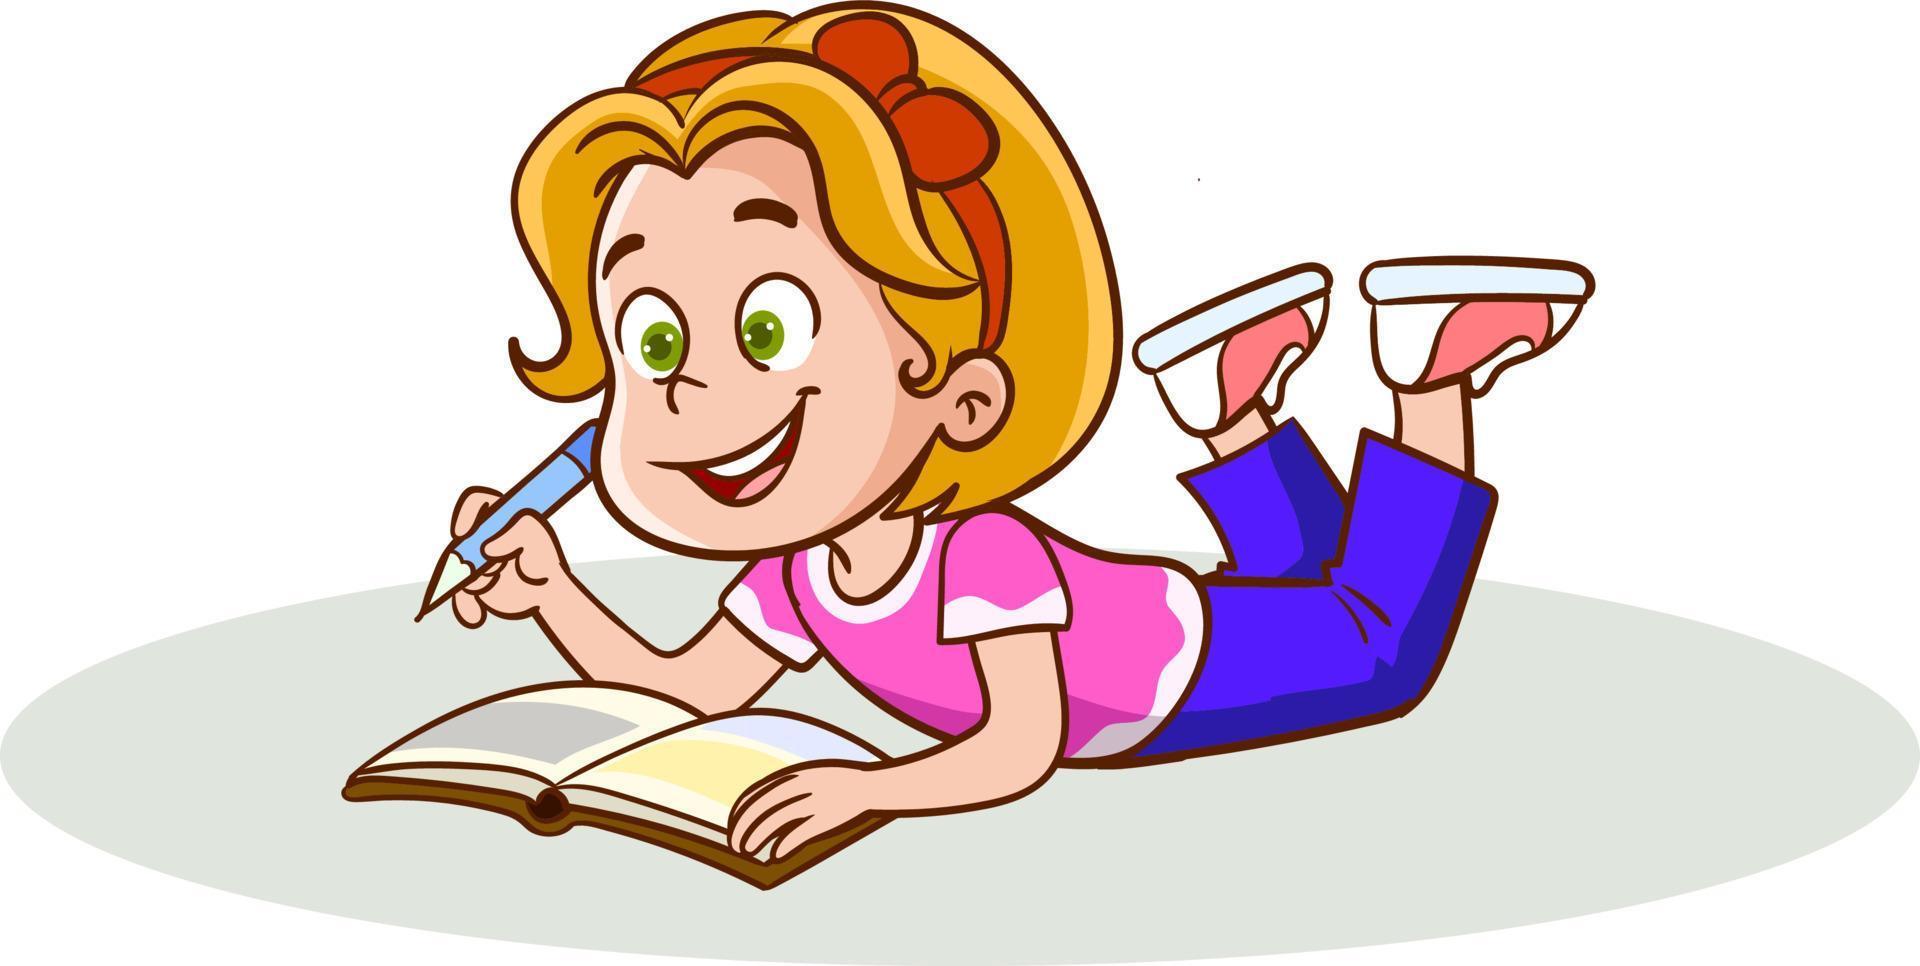 zoet weinig meisje aan het liegen Aan haar maag en lezing een boek, kind genieten van lezing, kleurrijk karakter vector illustratie